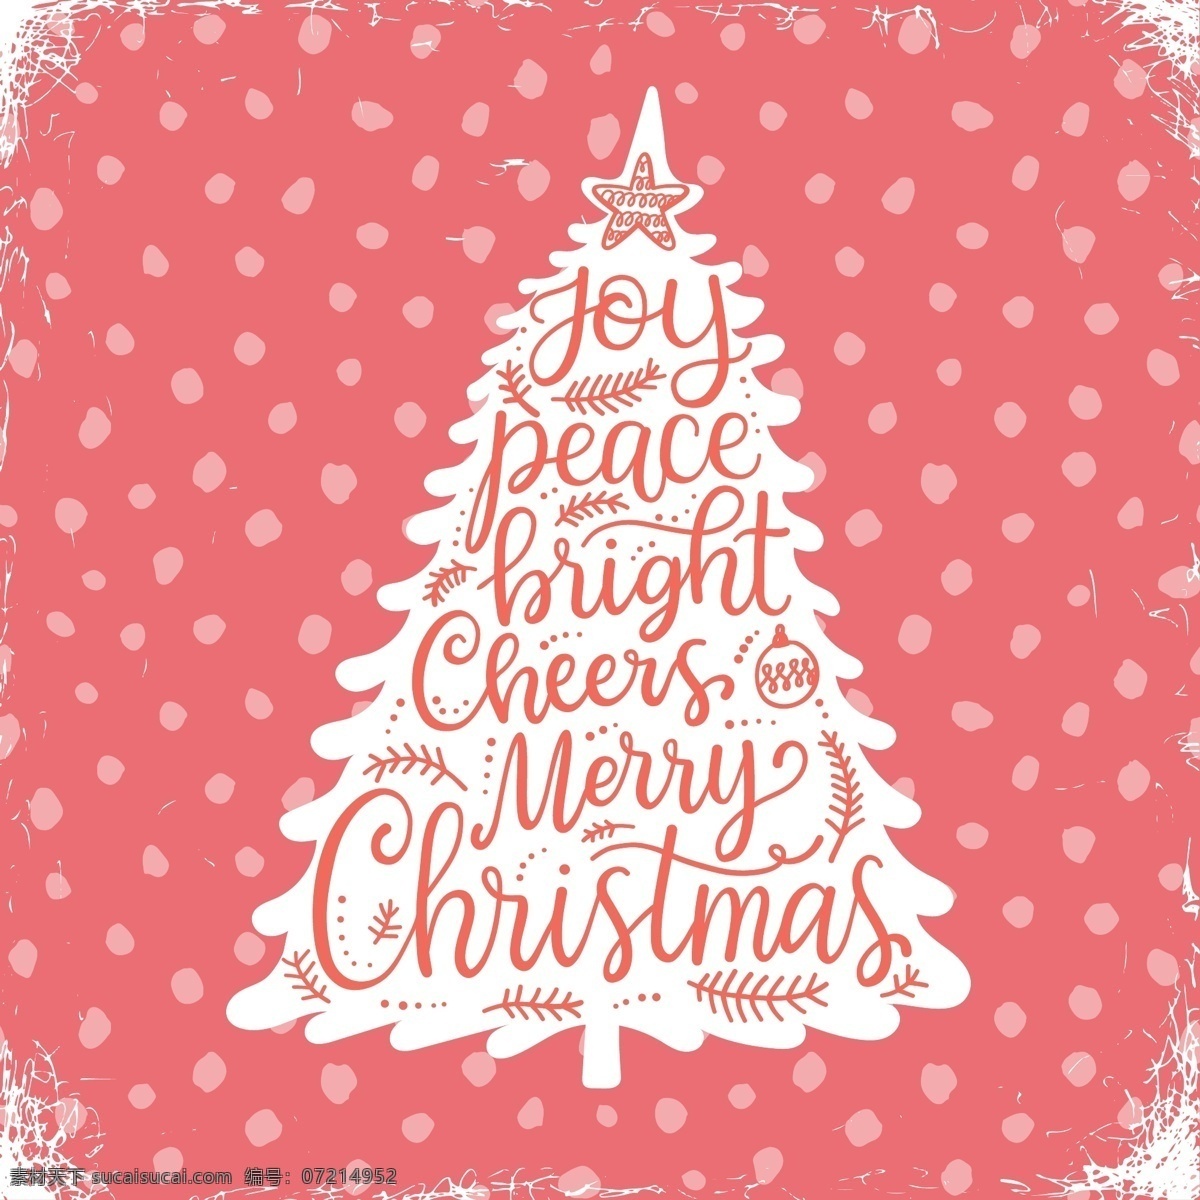 粉色 圣诞树 背景 卡通 冬季 冬日 节日 平面素材 设计素材 圣诞 圣诞节 矢量素材 温暖 温馨